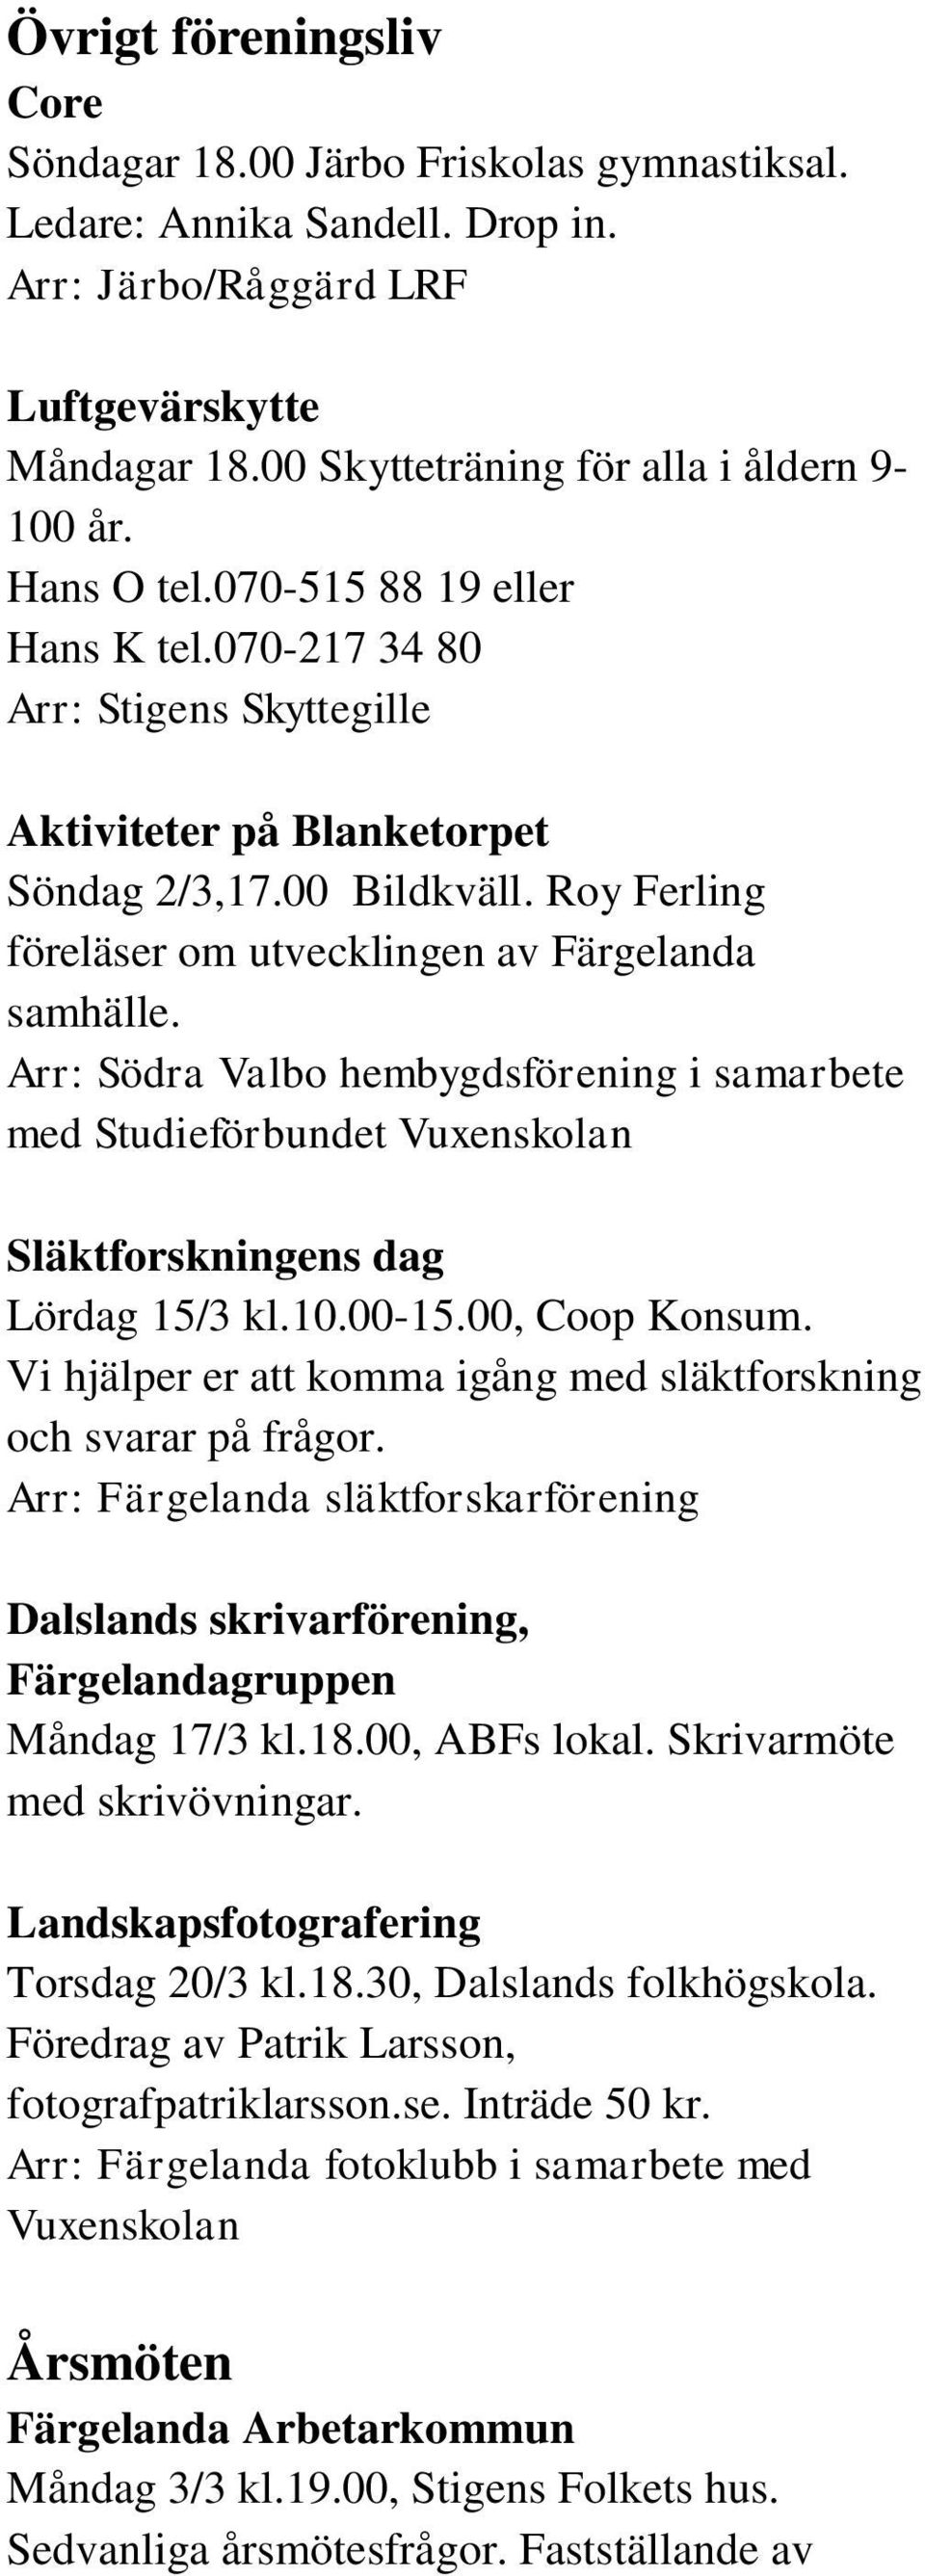 Arr: Södra Valbo hembygdsförening i samarbete med Studieförbundet Vuxenskolan Släktforskningens dag Lördag 15/3 kl.10.00-15.00, Coop Konsum.